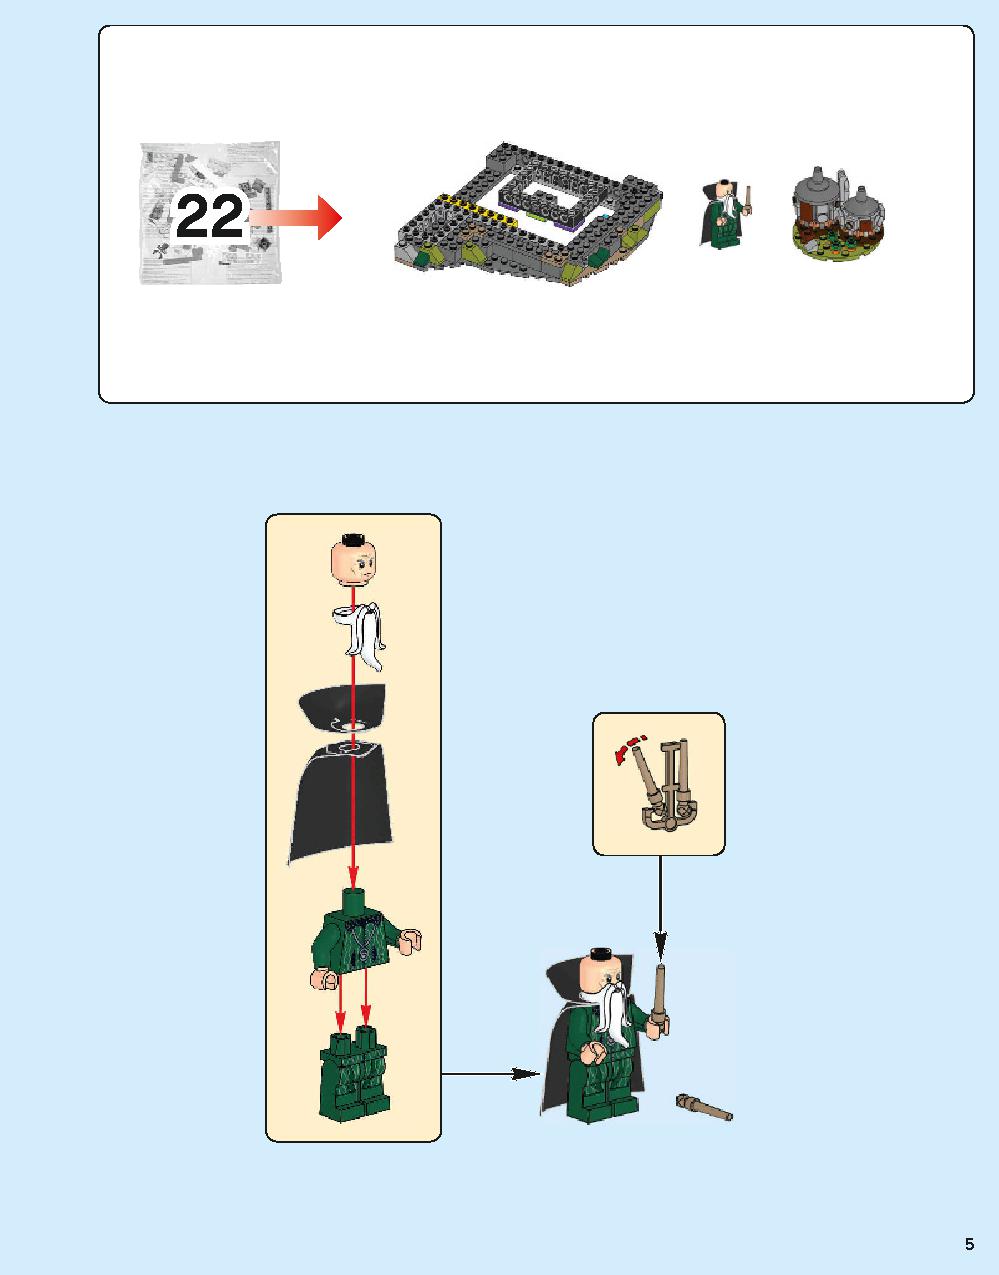 ホグワーツ城 71043 レゴの商品情報 レゴの説明書・組立方法 5 page